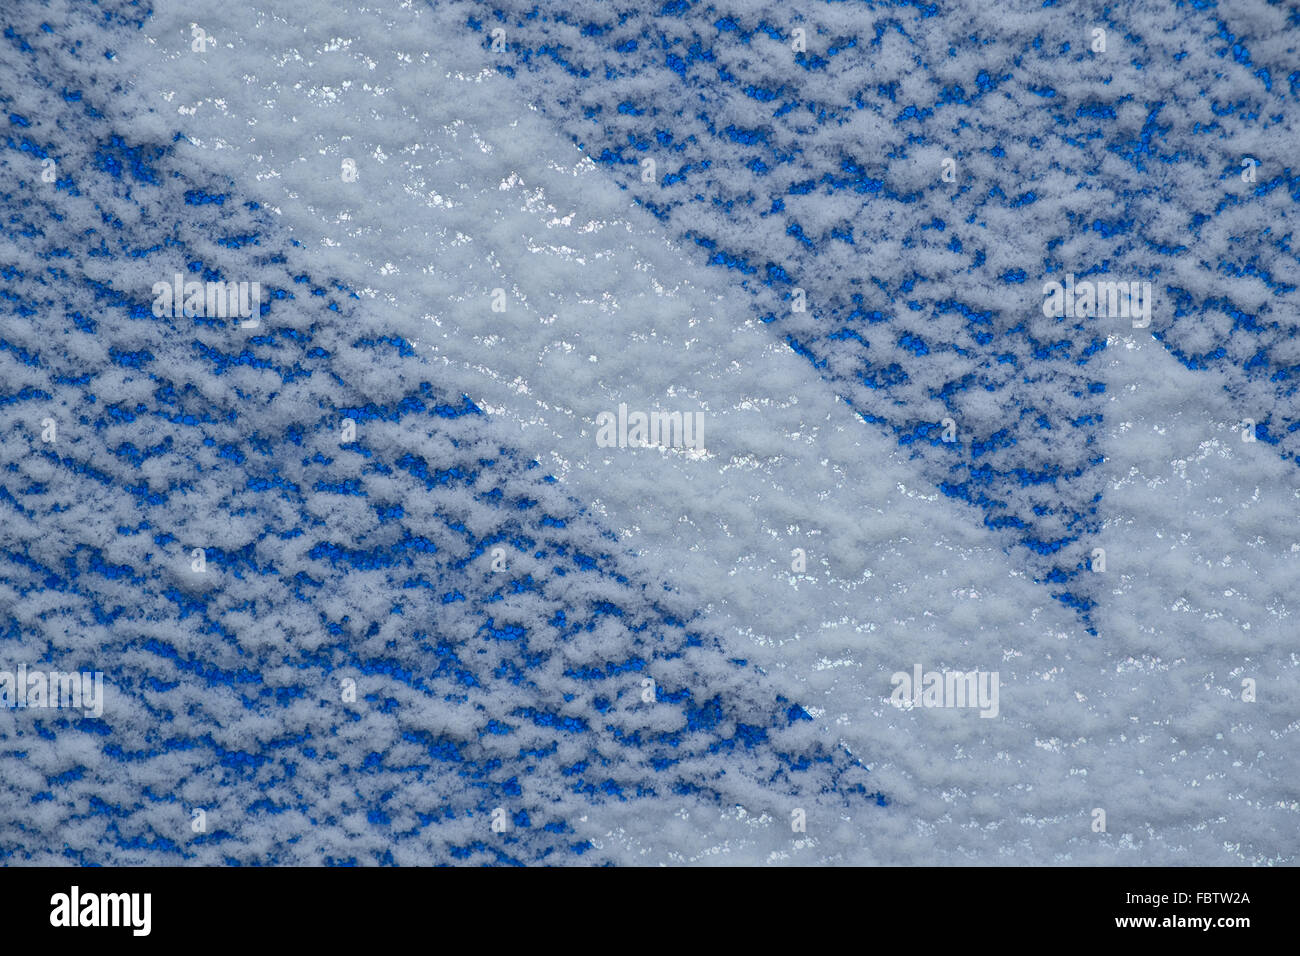 Neige sur un panneau bleu avec une flèche blanche Banque D'Images